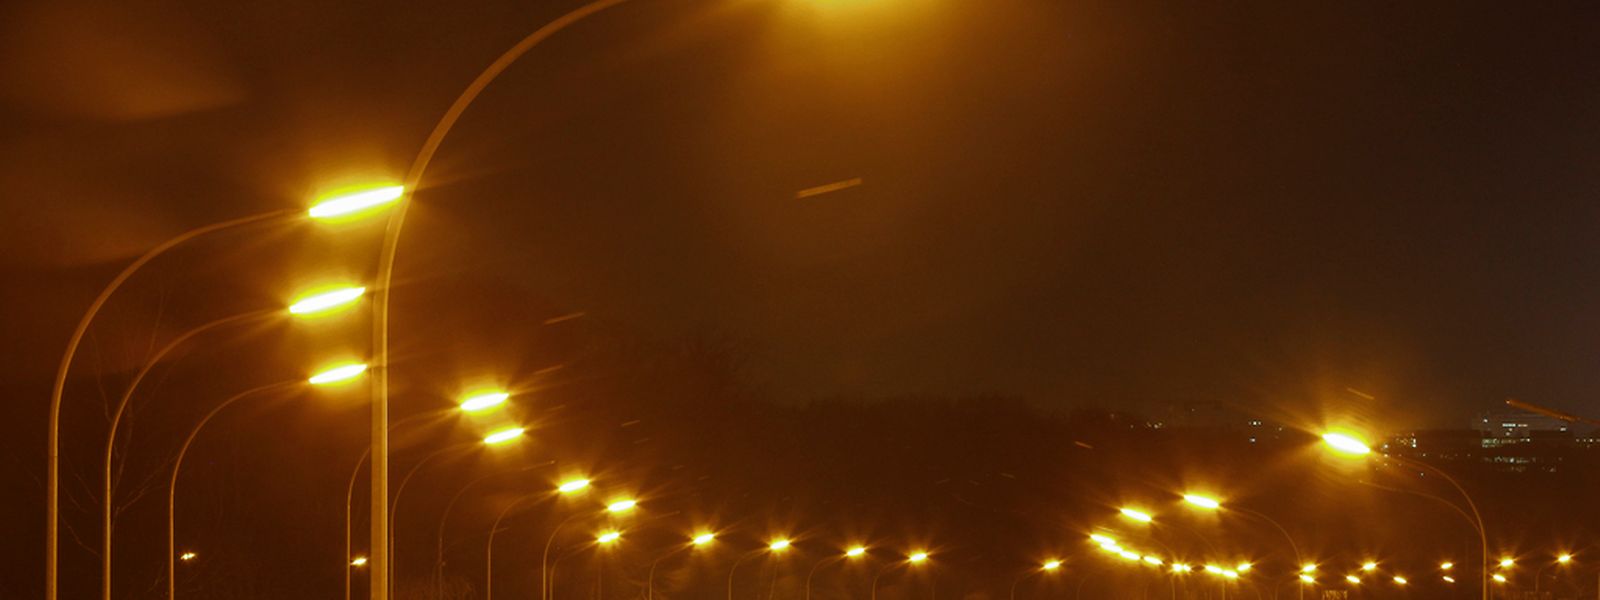 La Wallonie décide de réduire l'éclairage sur ses autoroutes - le Luxembourg a déjà fait des premiers pas dans cette direction avant la crise.  